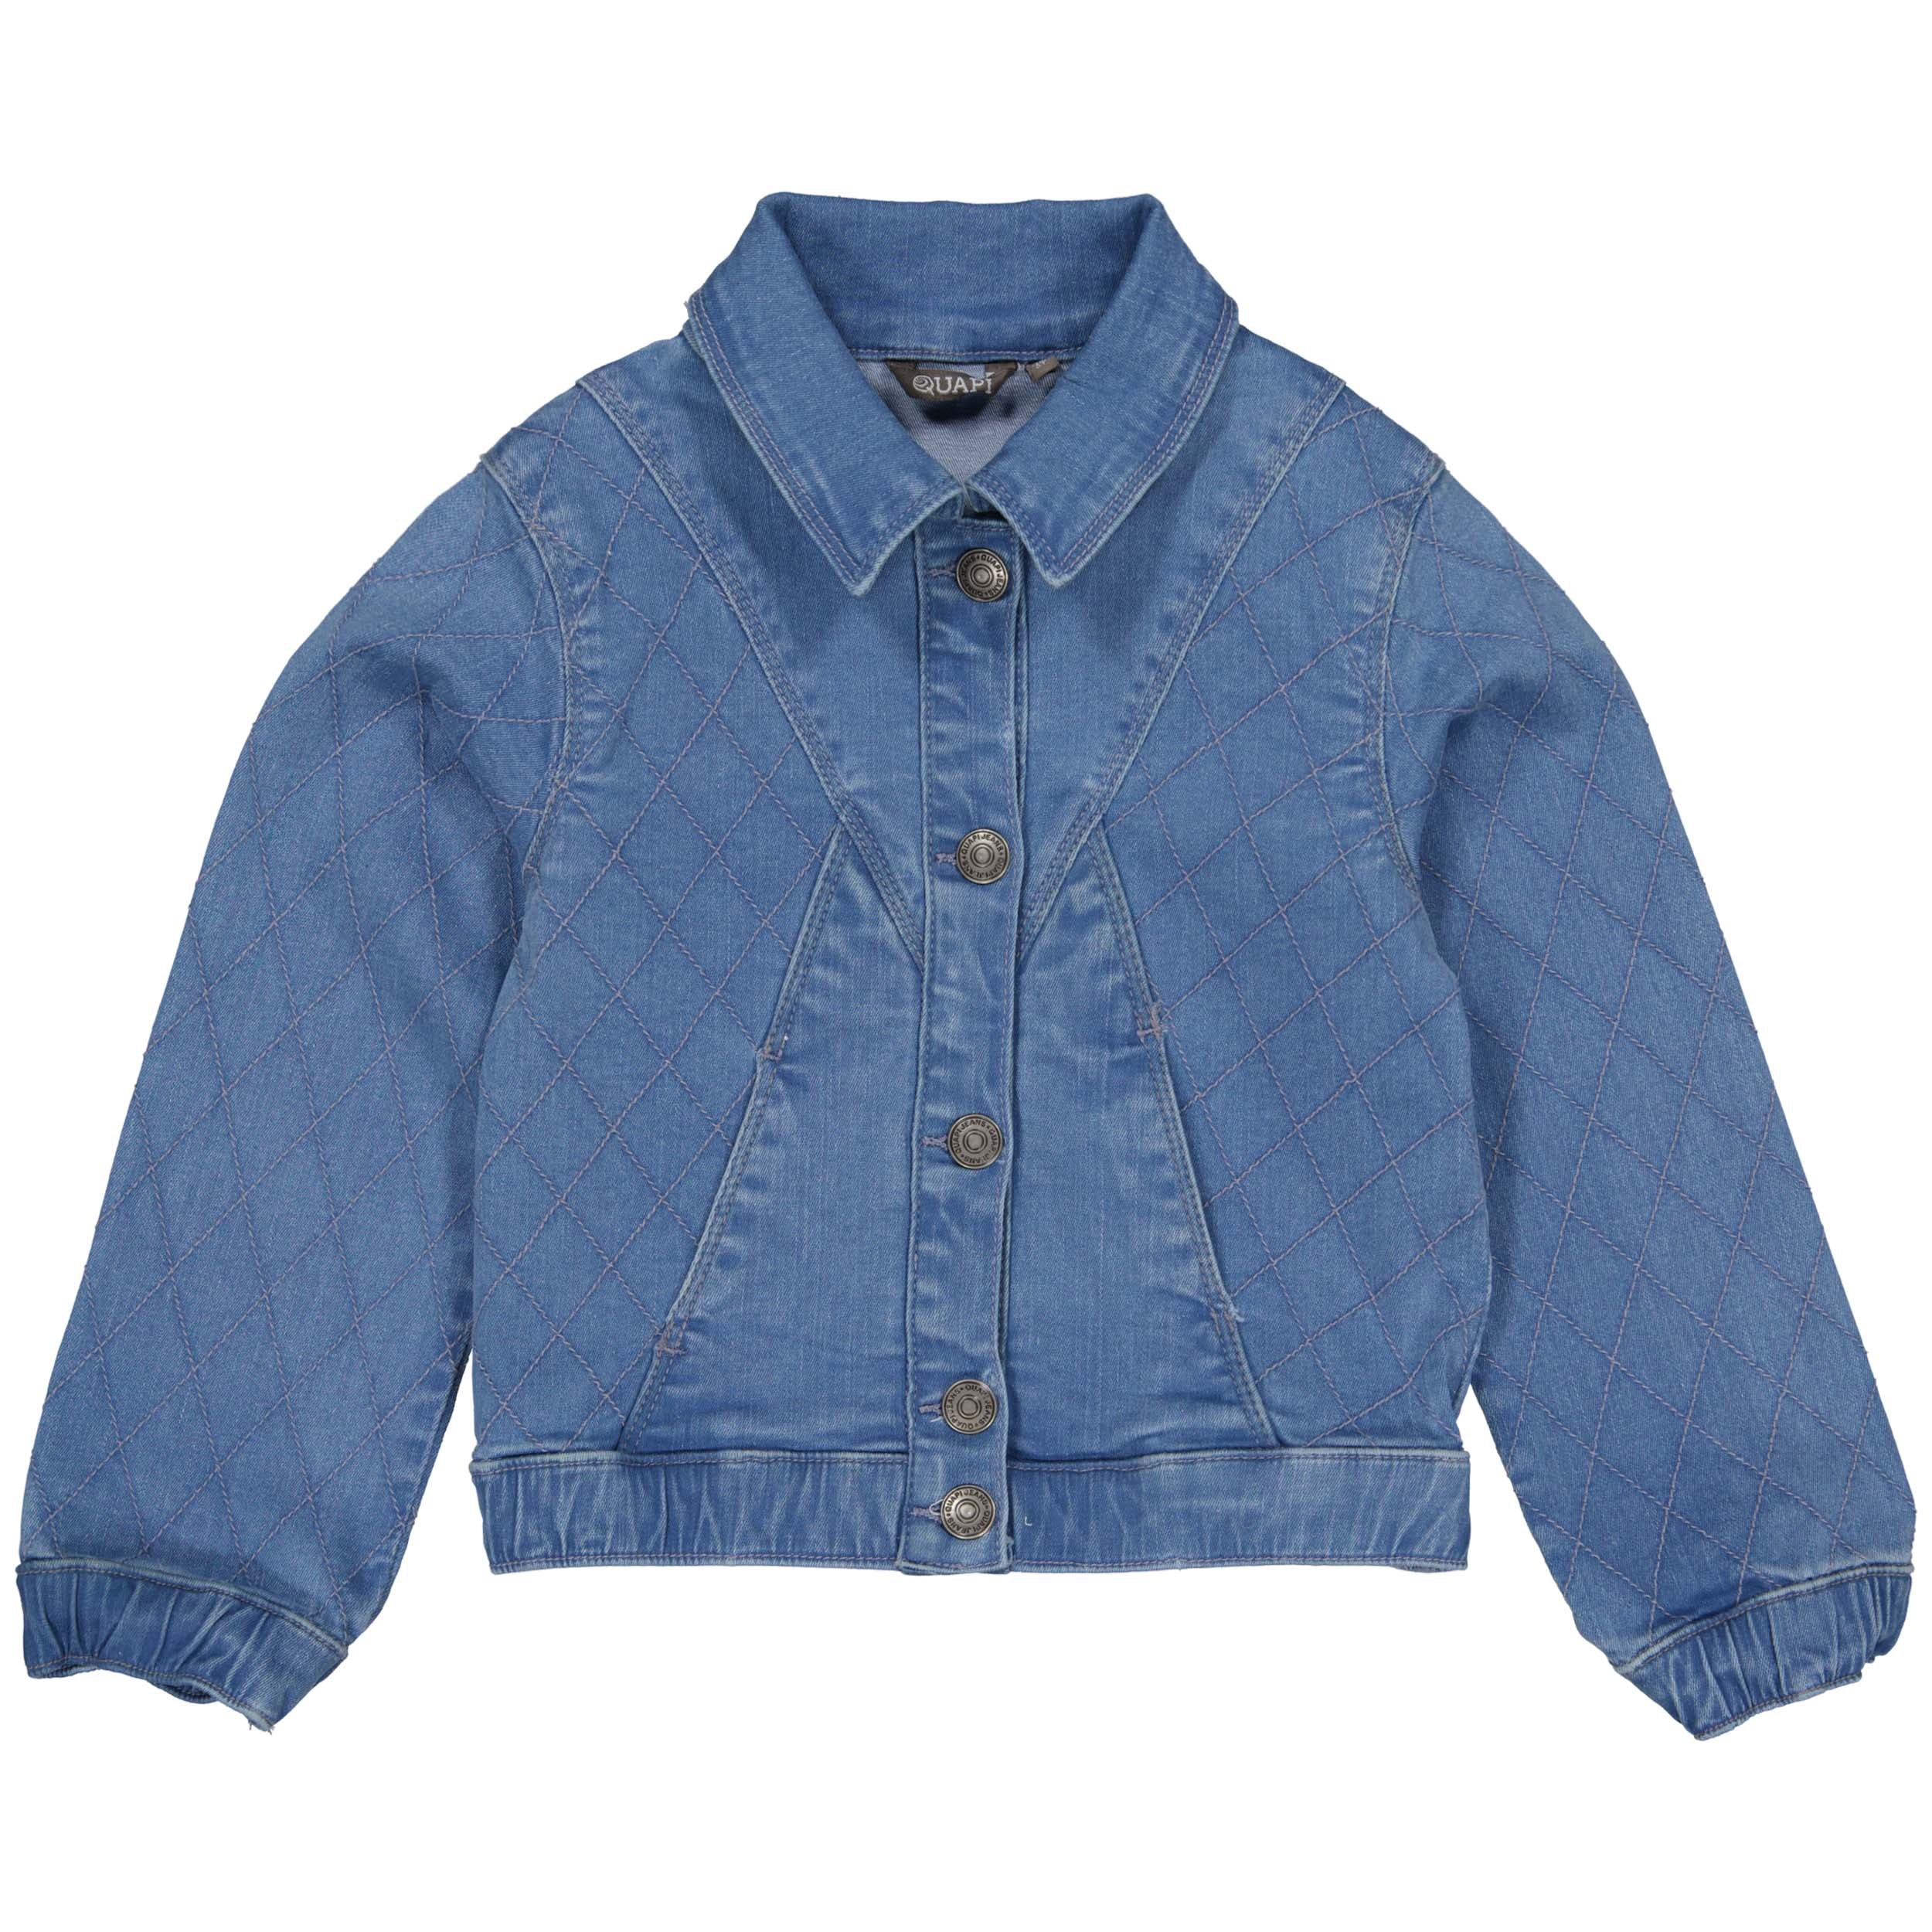 Meisjes Jacket BETRIJSQS241 van Quapi in de kleur Blue Denim in maat 122-128.